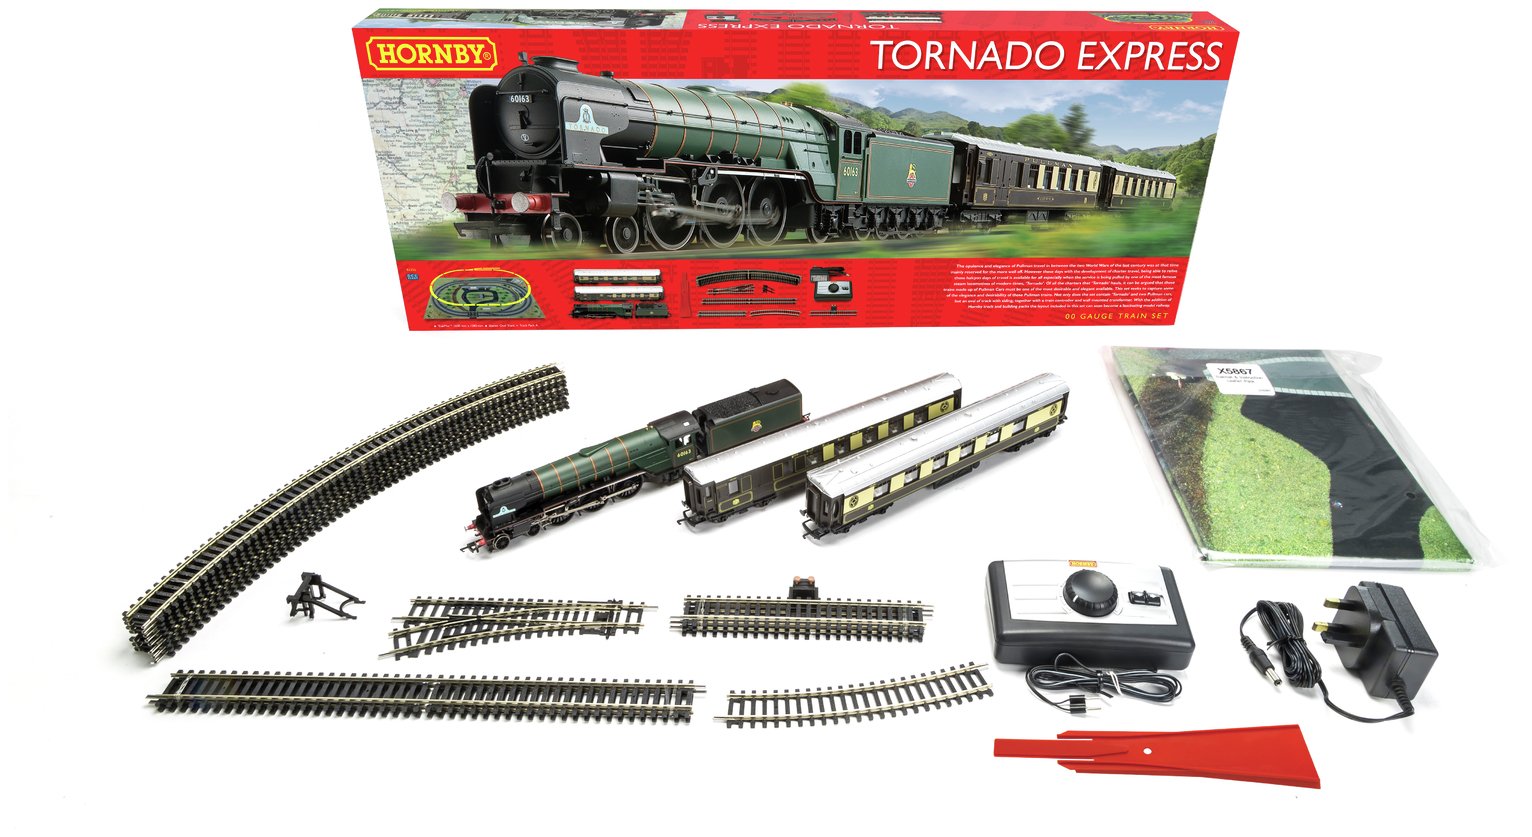 Hornby Hobbies The Tornado Express Train Set Review